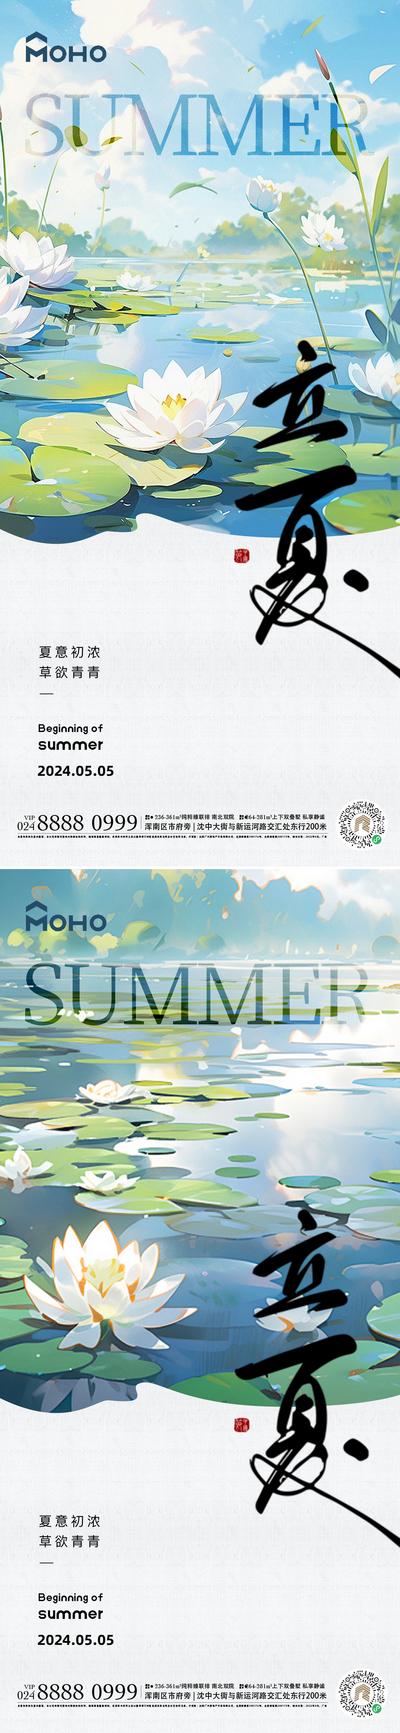 【南门网】广告 海报 节气 立夏 夏至 荷叶 荷花 荷塘 夏天 阳光 大暑 小暑 夏